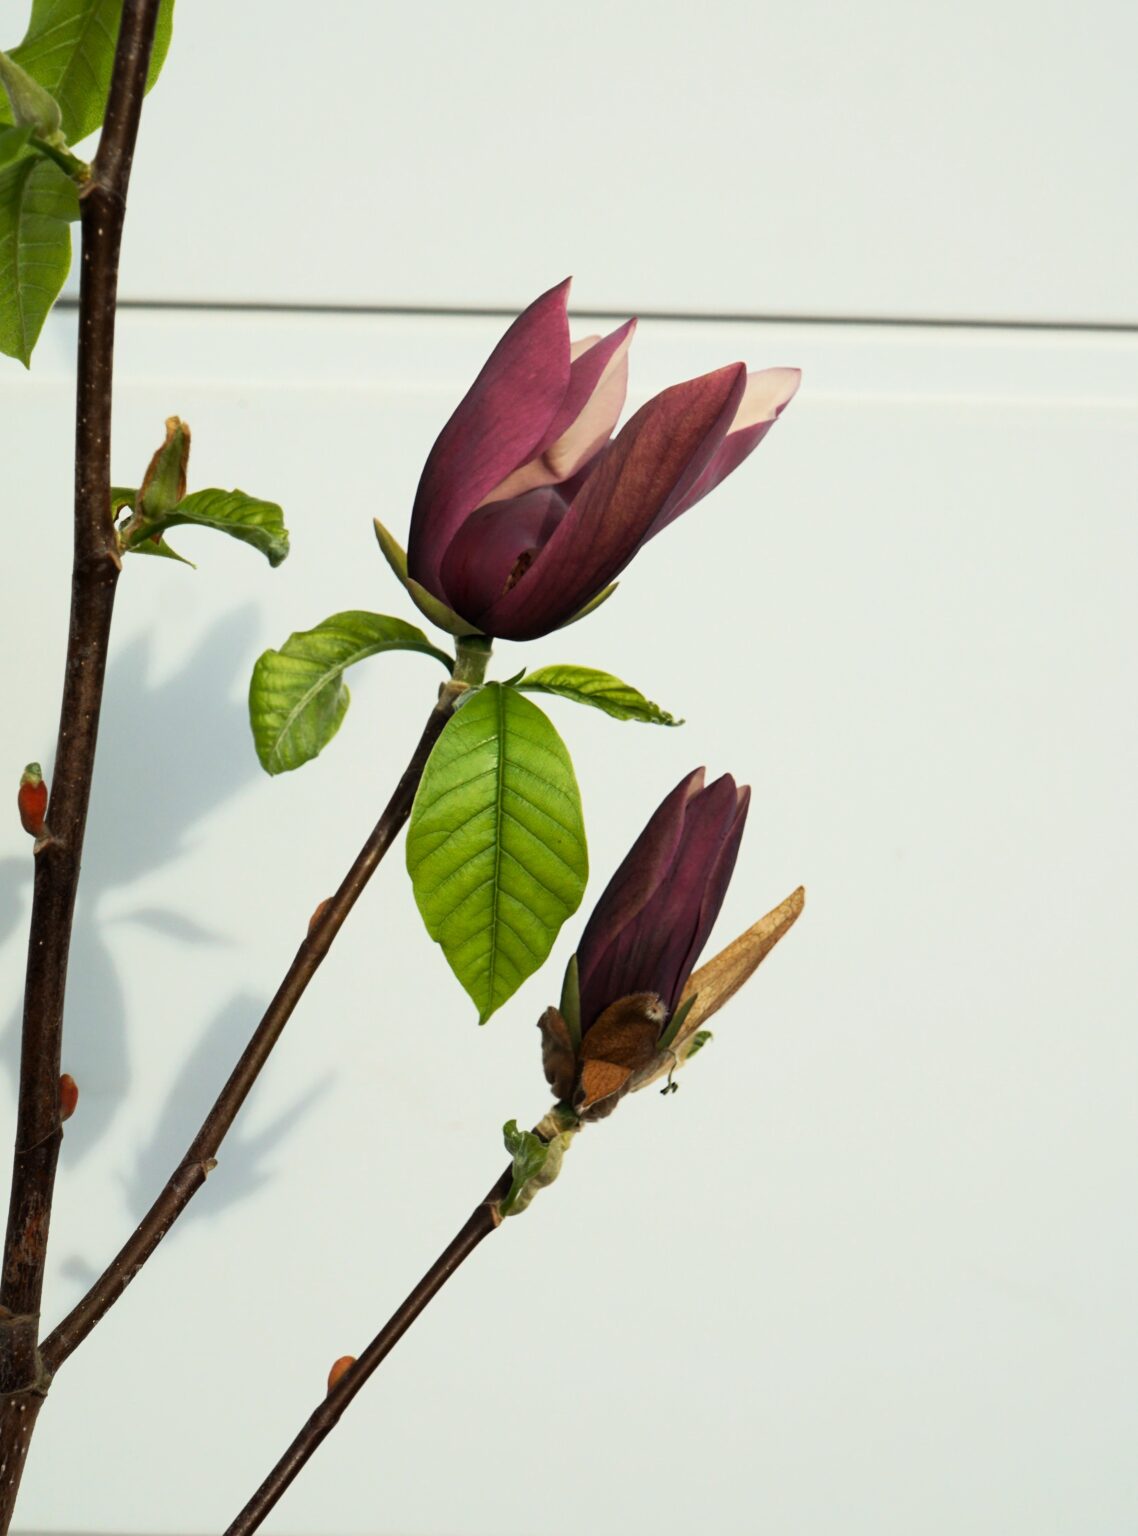 MAGNOLIA BRUKLIŃSKA BLACK BEAUTY Magnolia ×brooklynensis